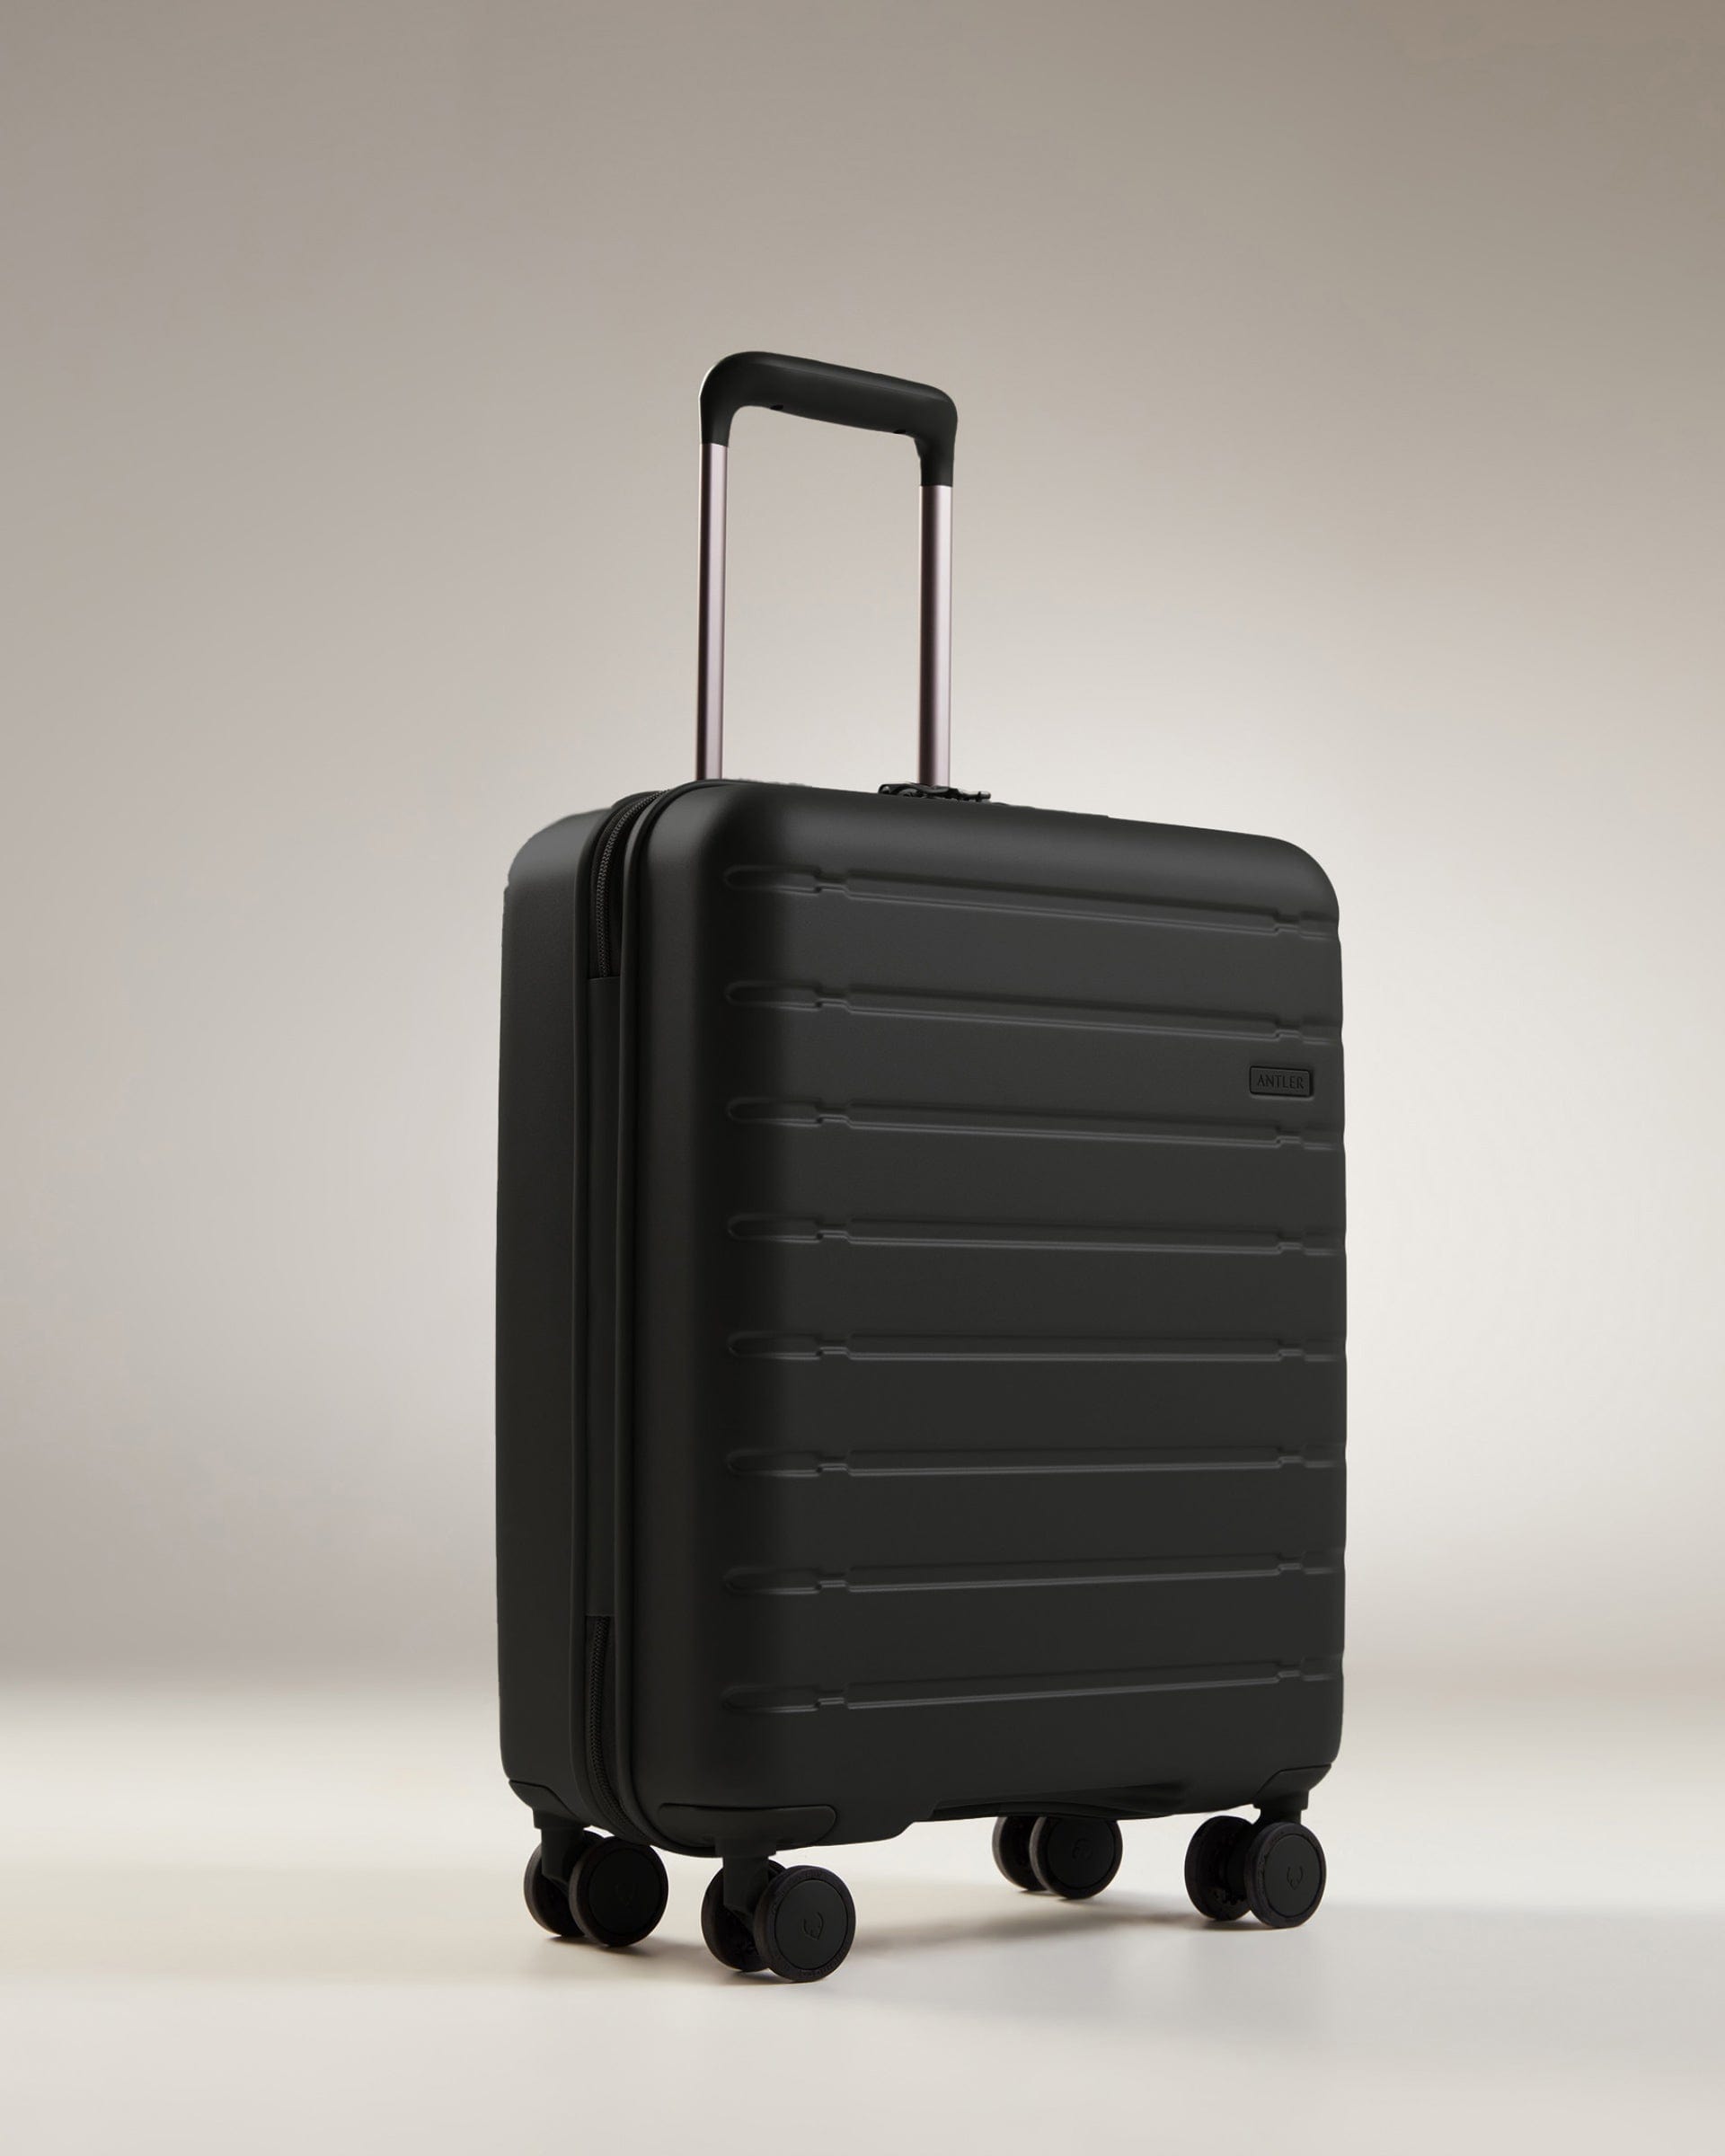 View Antler Stamford 20 Cabin Suitcase In Midnight Black Size 20cm x 402cm x 541cm information